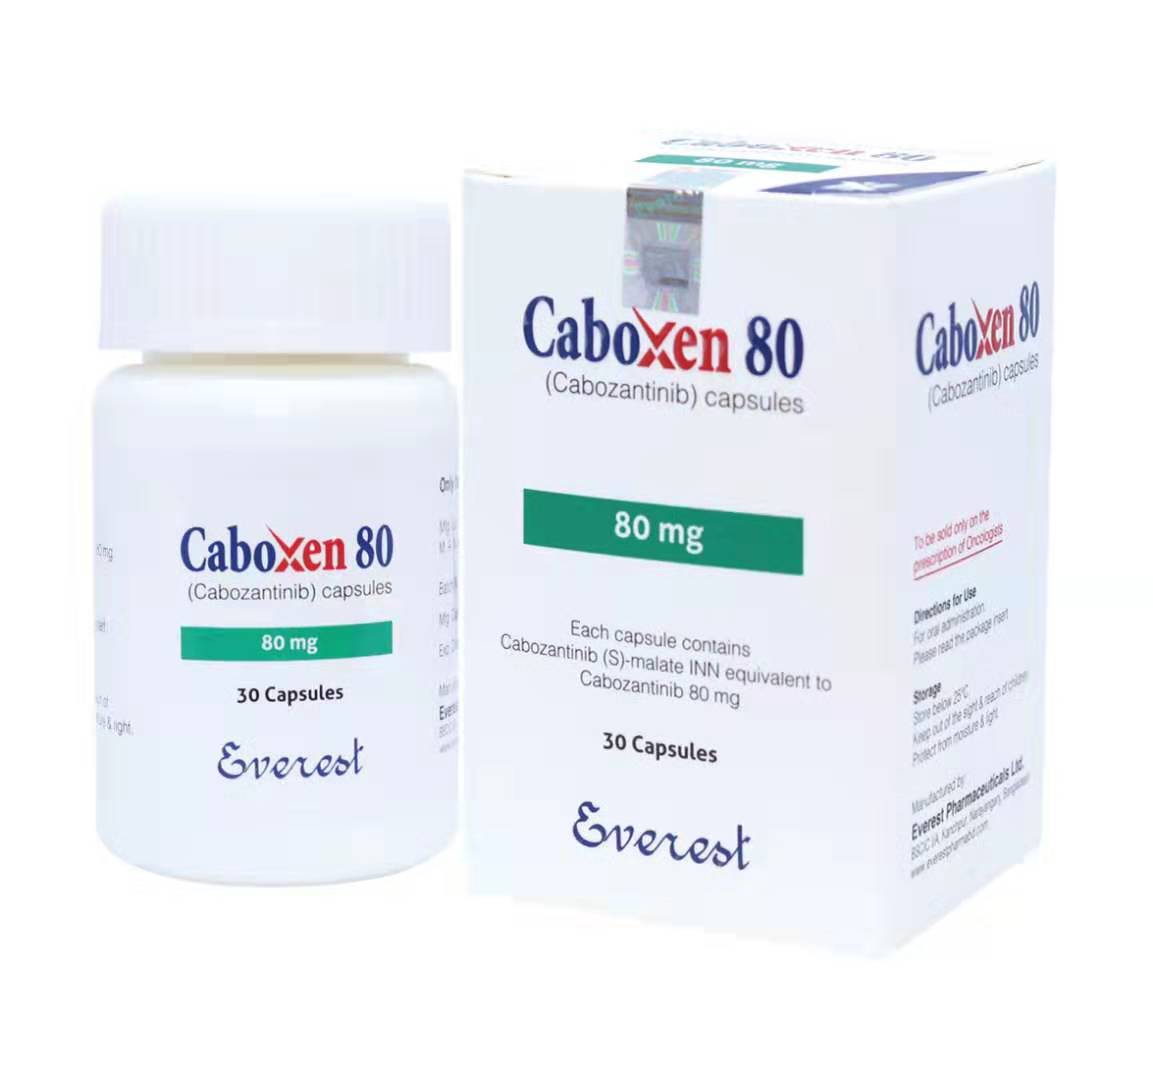 Caboxen80